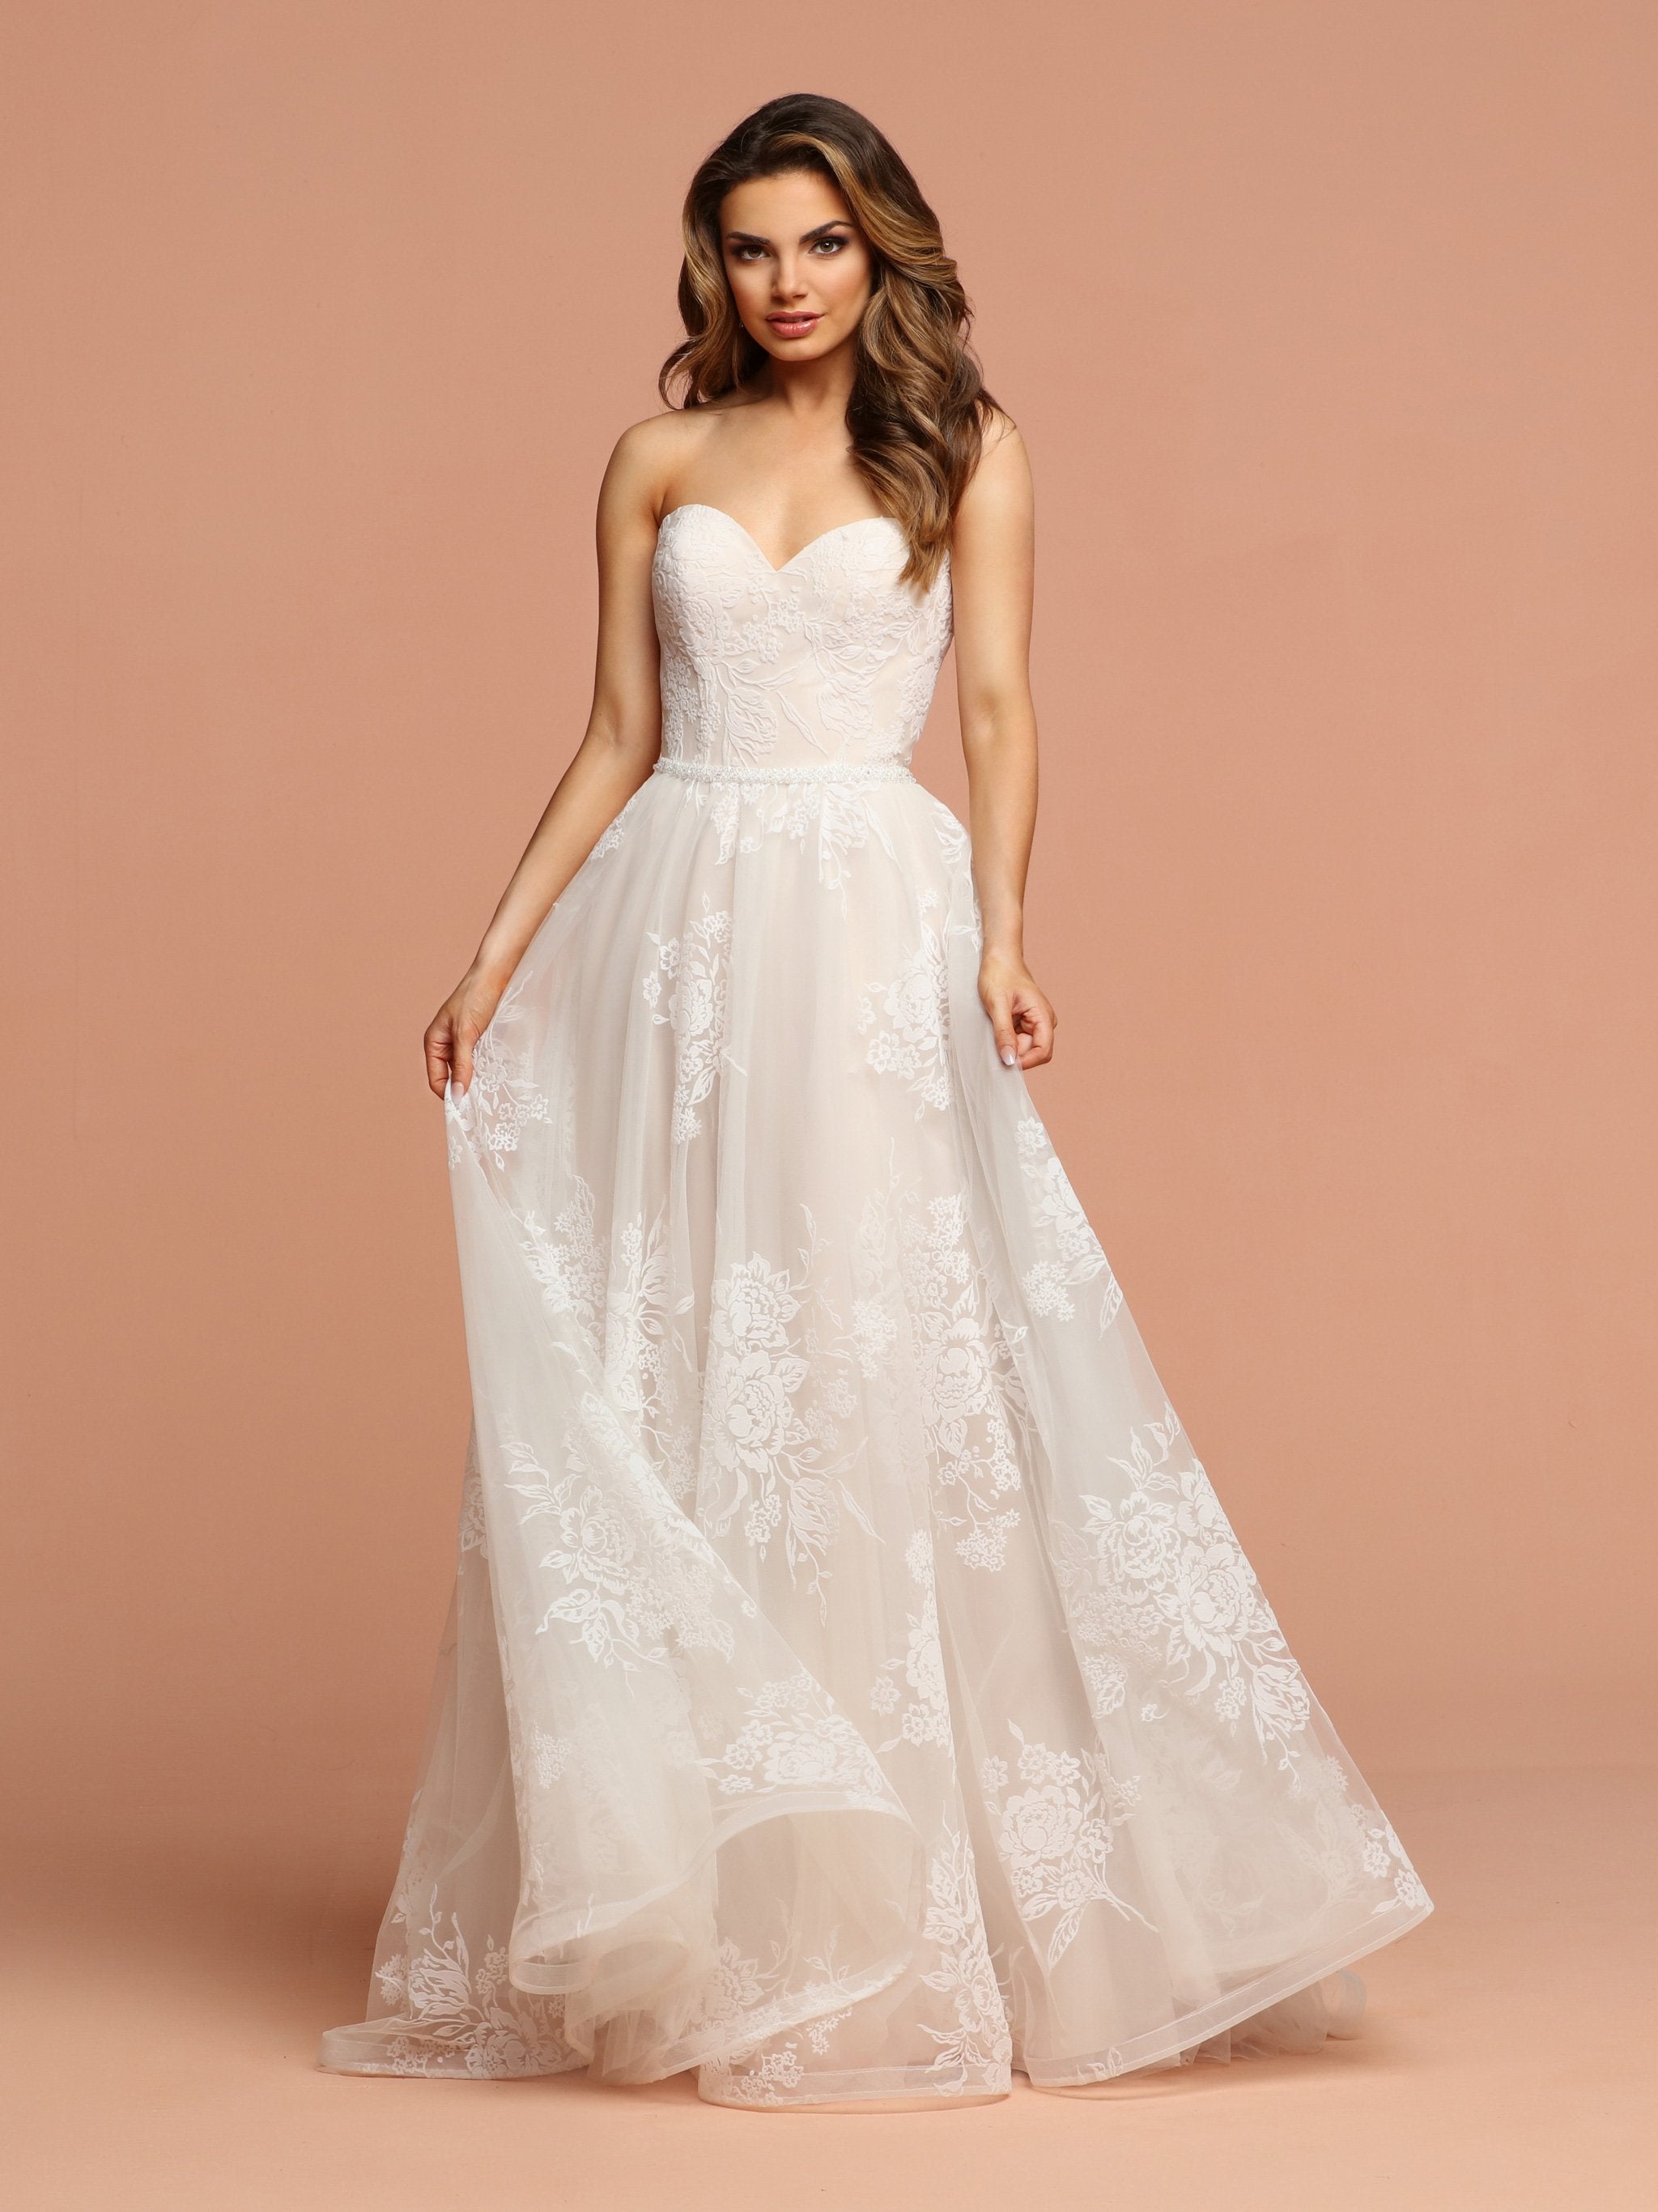 Buy 64/8XL Size Red Velvet Wedding Dresses Online for Women in USA